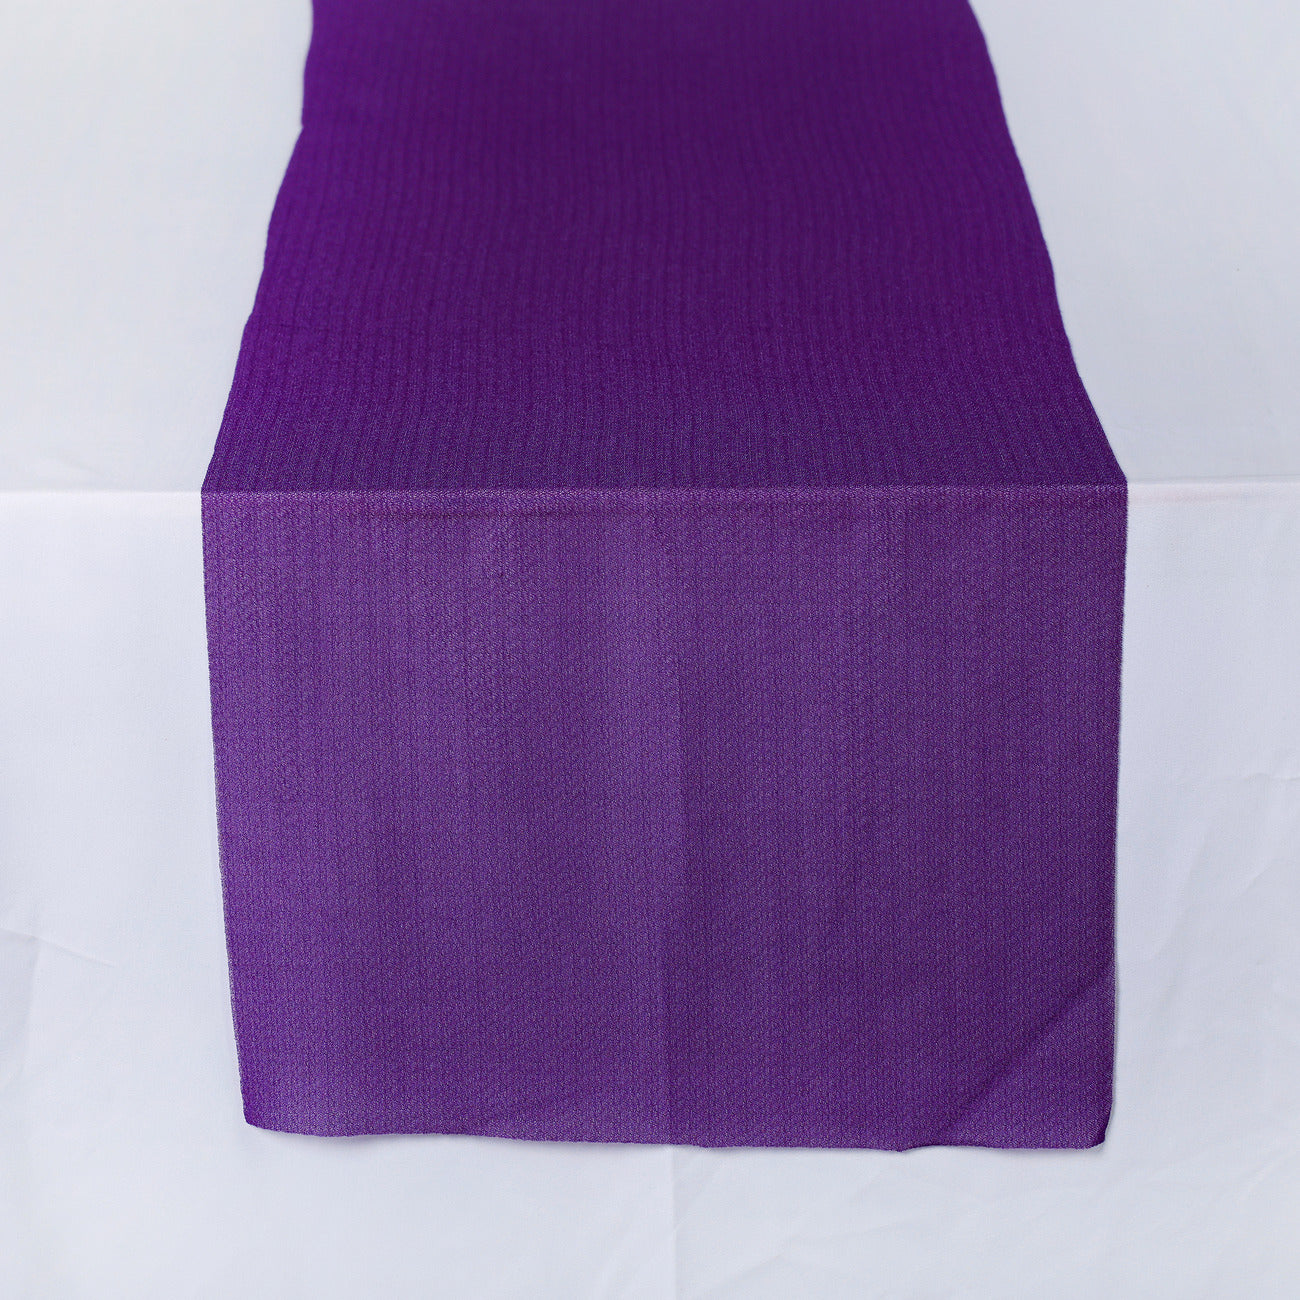 Purple,6dbb9033-c4bb-424b-ab4d-4493e5550c8d